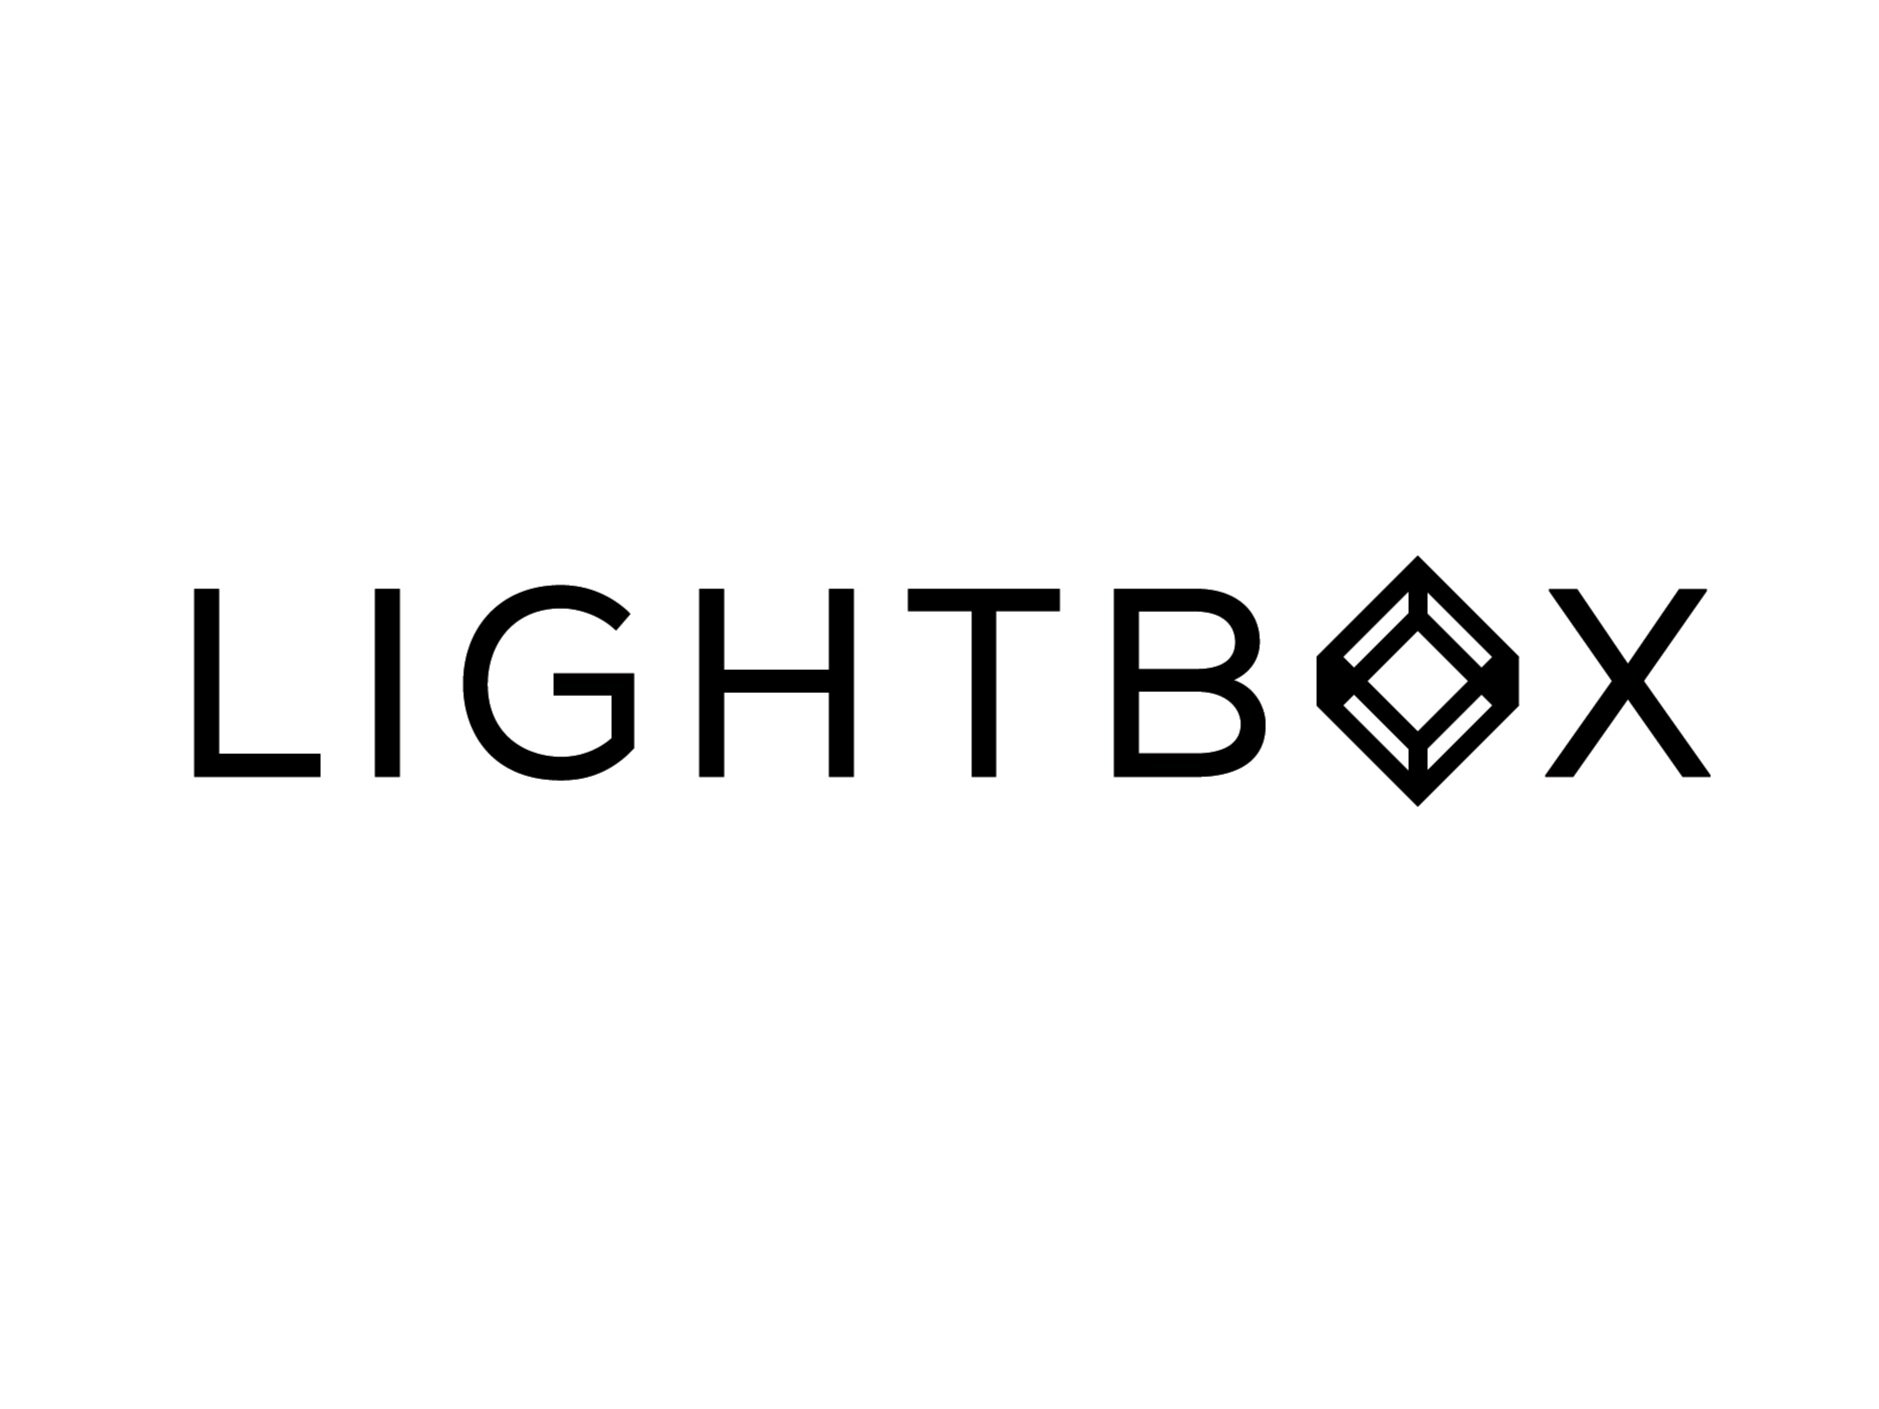 Lightbox_logo_various_sizes.jpg